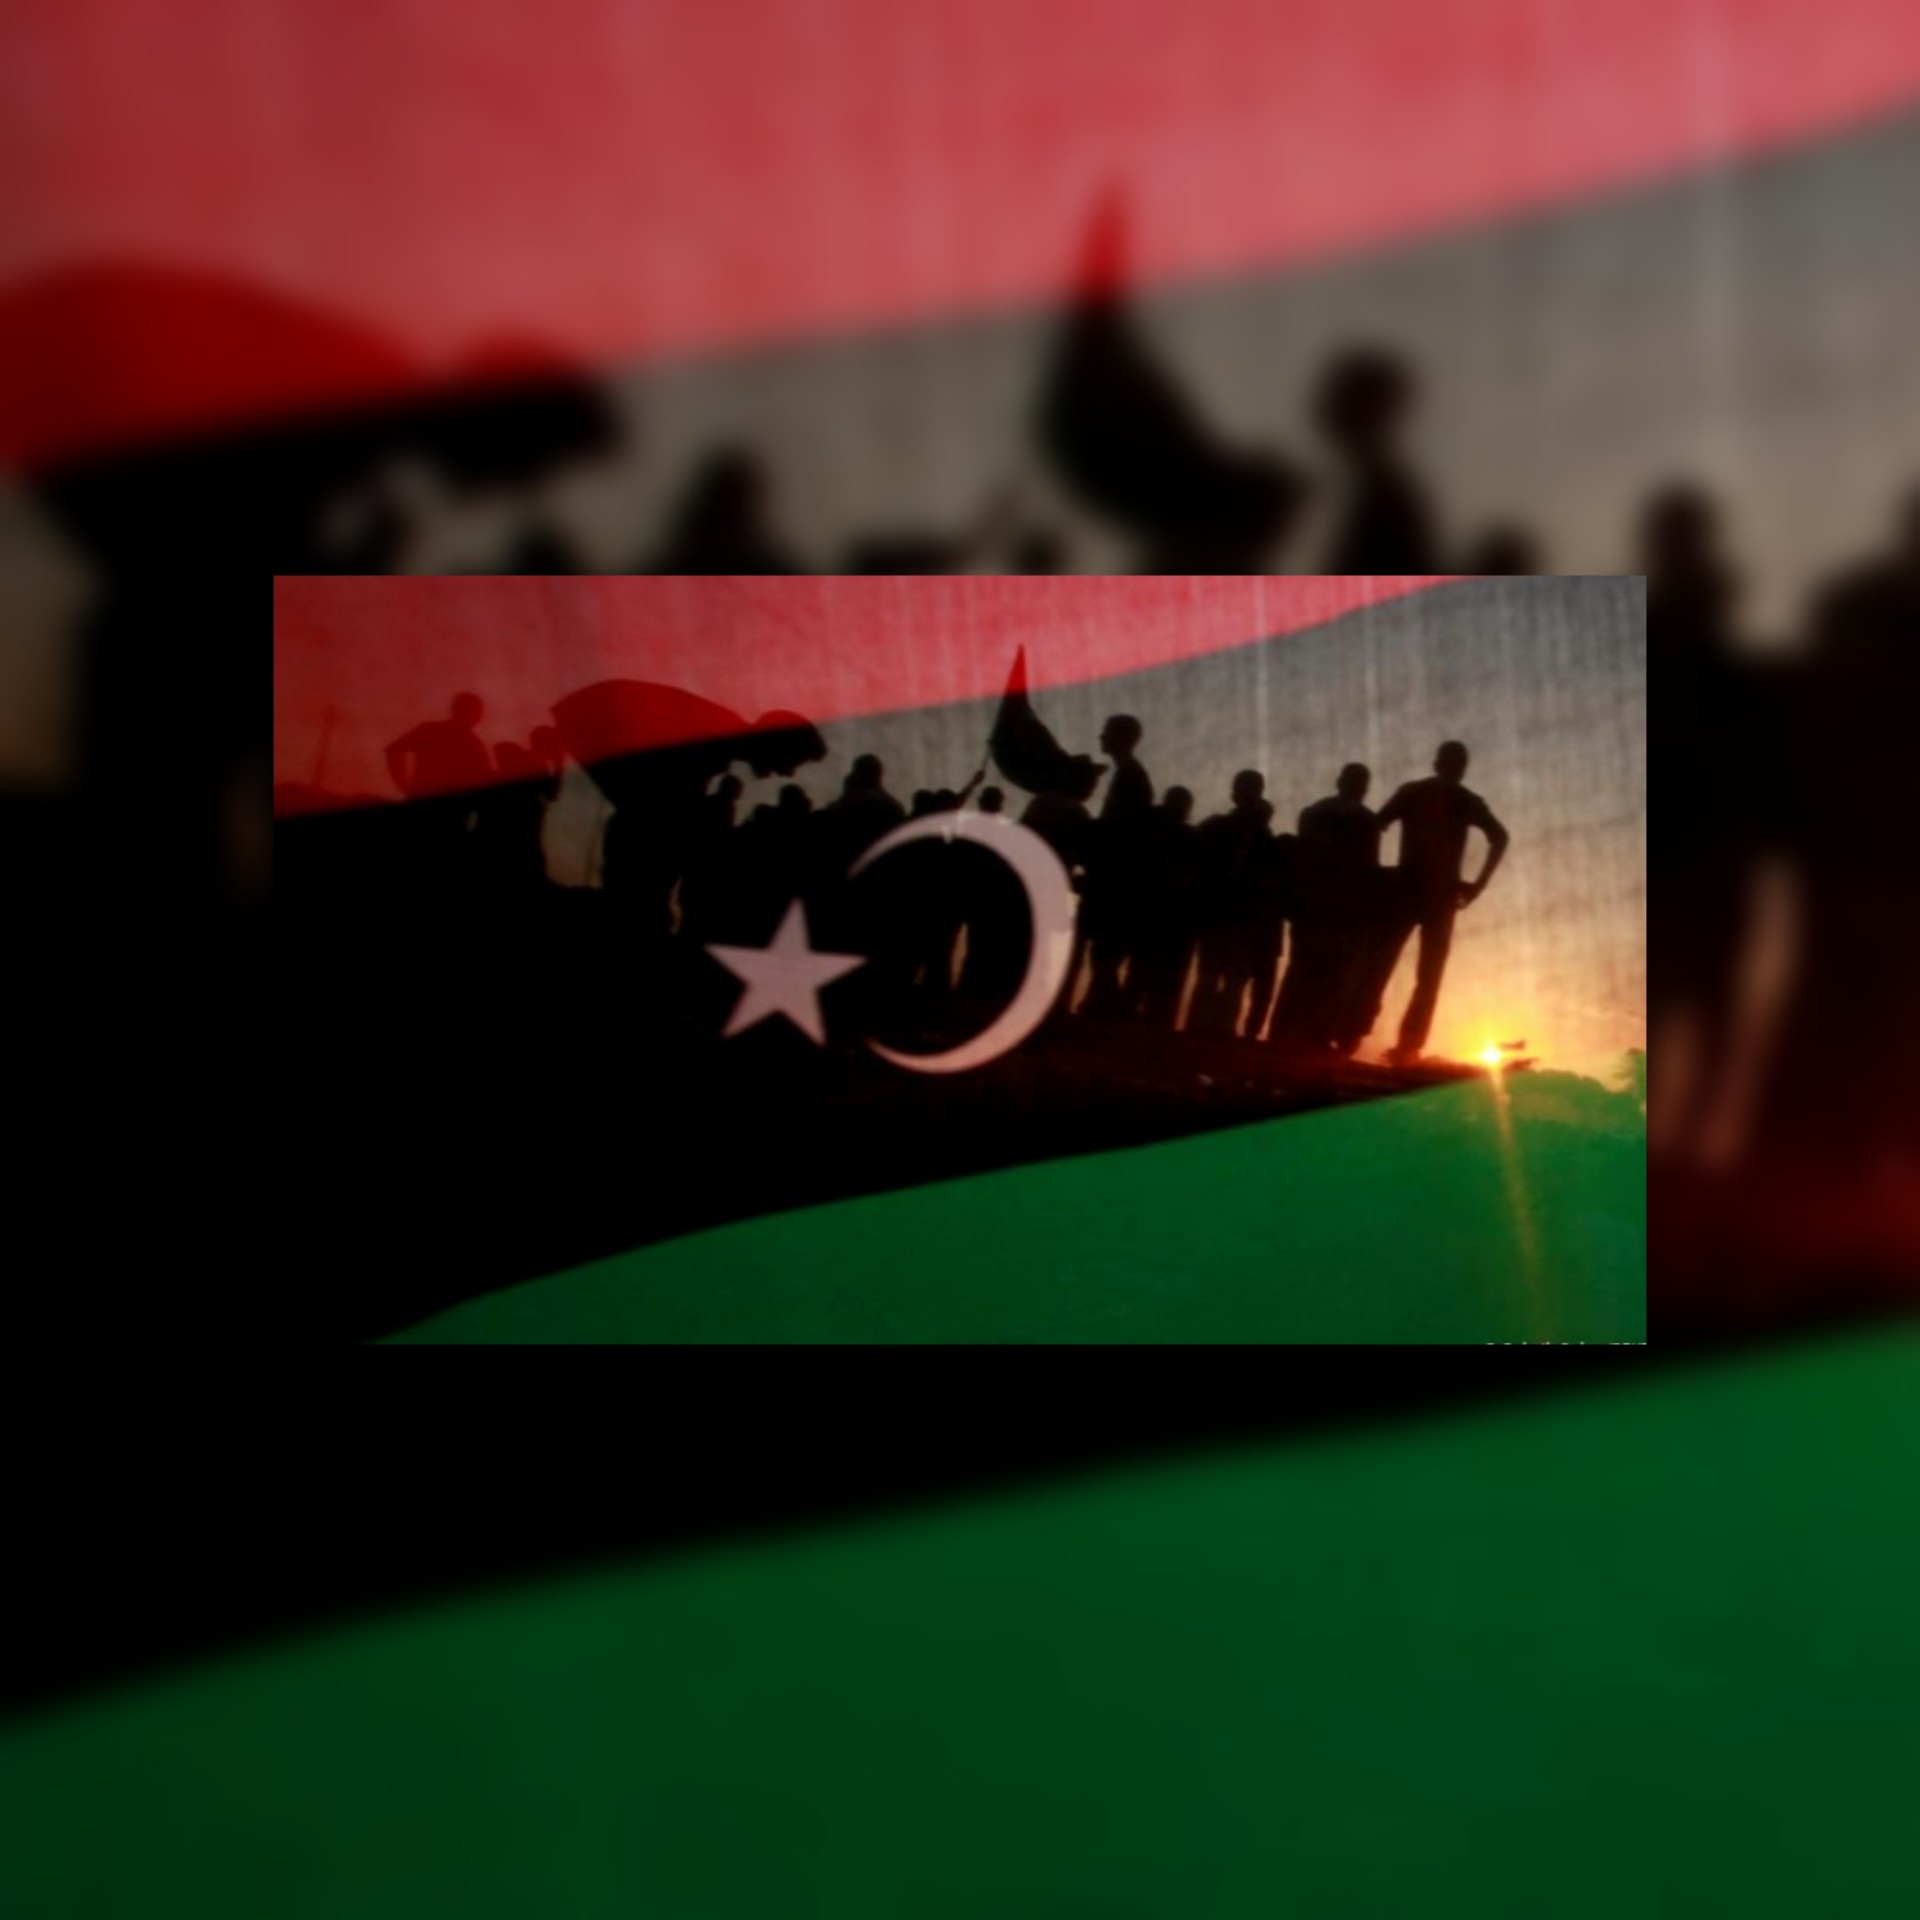 تقرير / ليبيا : انتخابات مؤجلة وقوانين مثيرة للجدل بشأن الانتخابات وضغوط غربية .... ليبيا  إلى أين؟